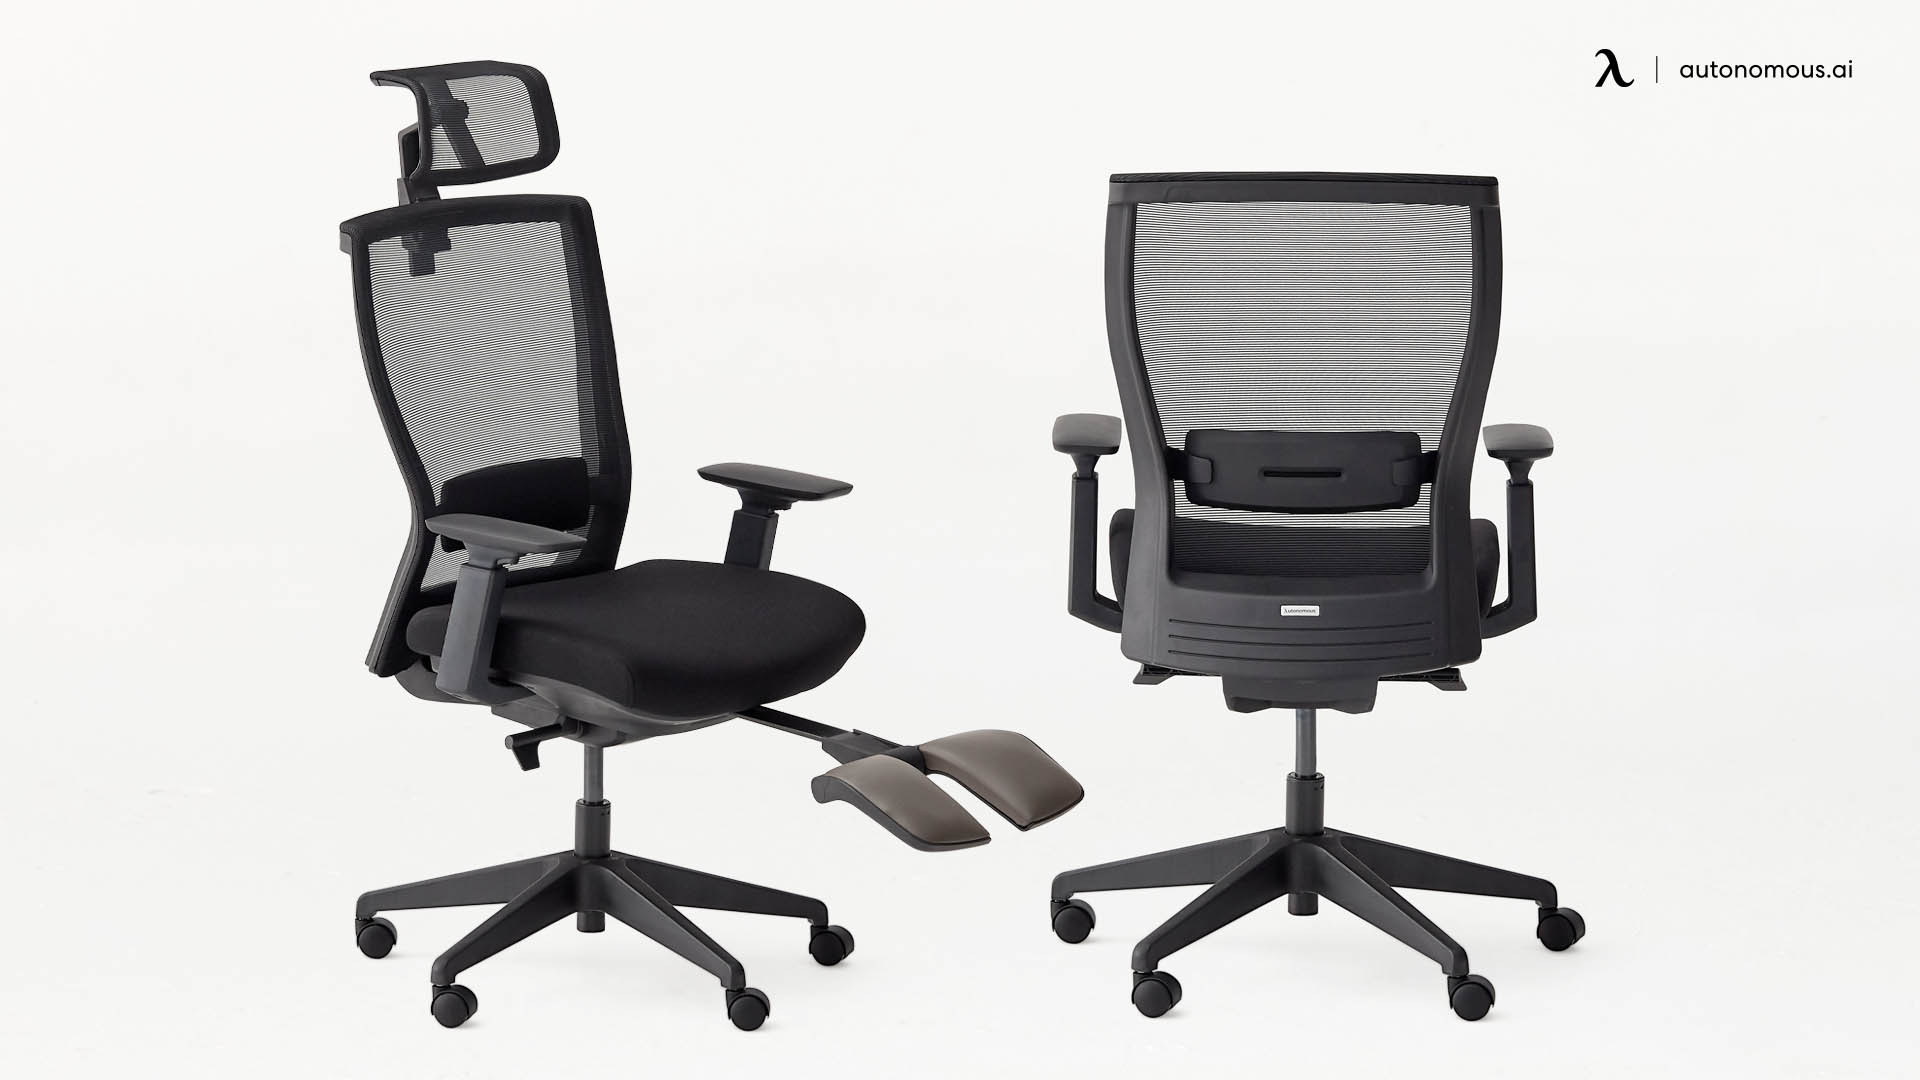 ErgoChair Recline small desk chair